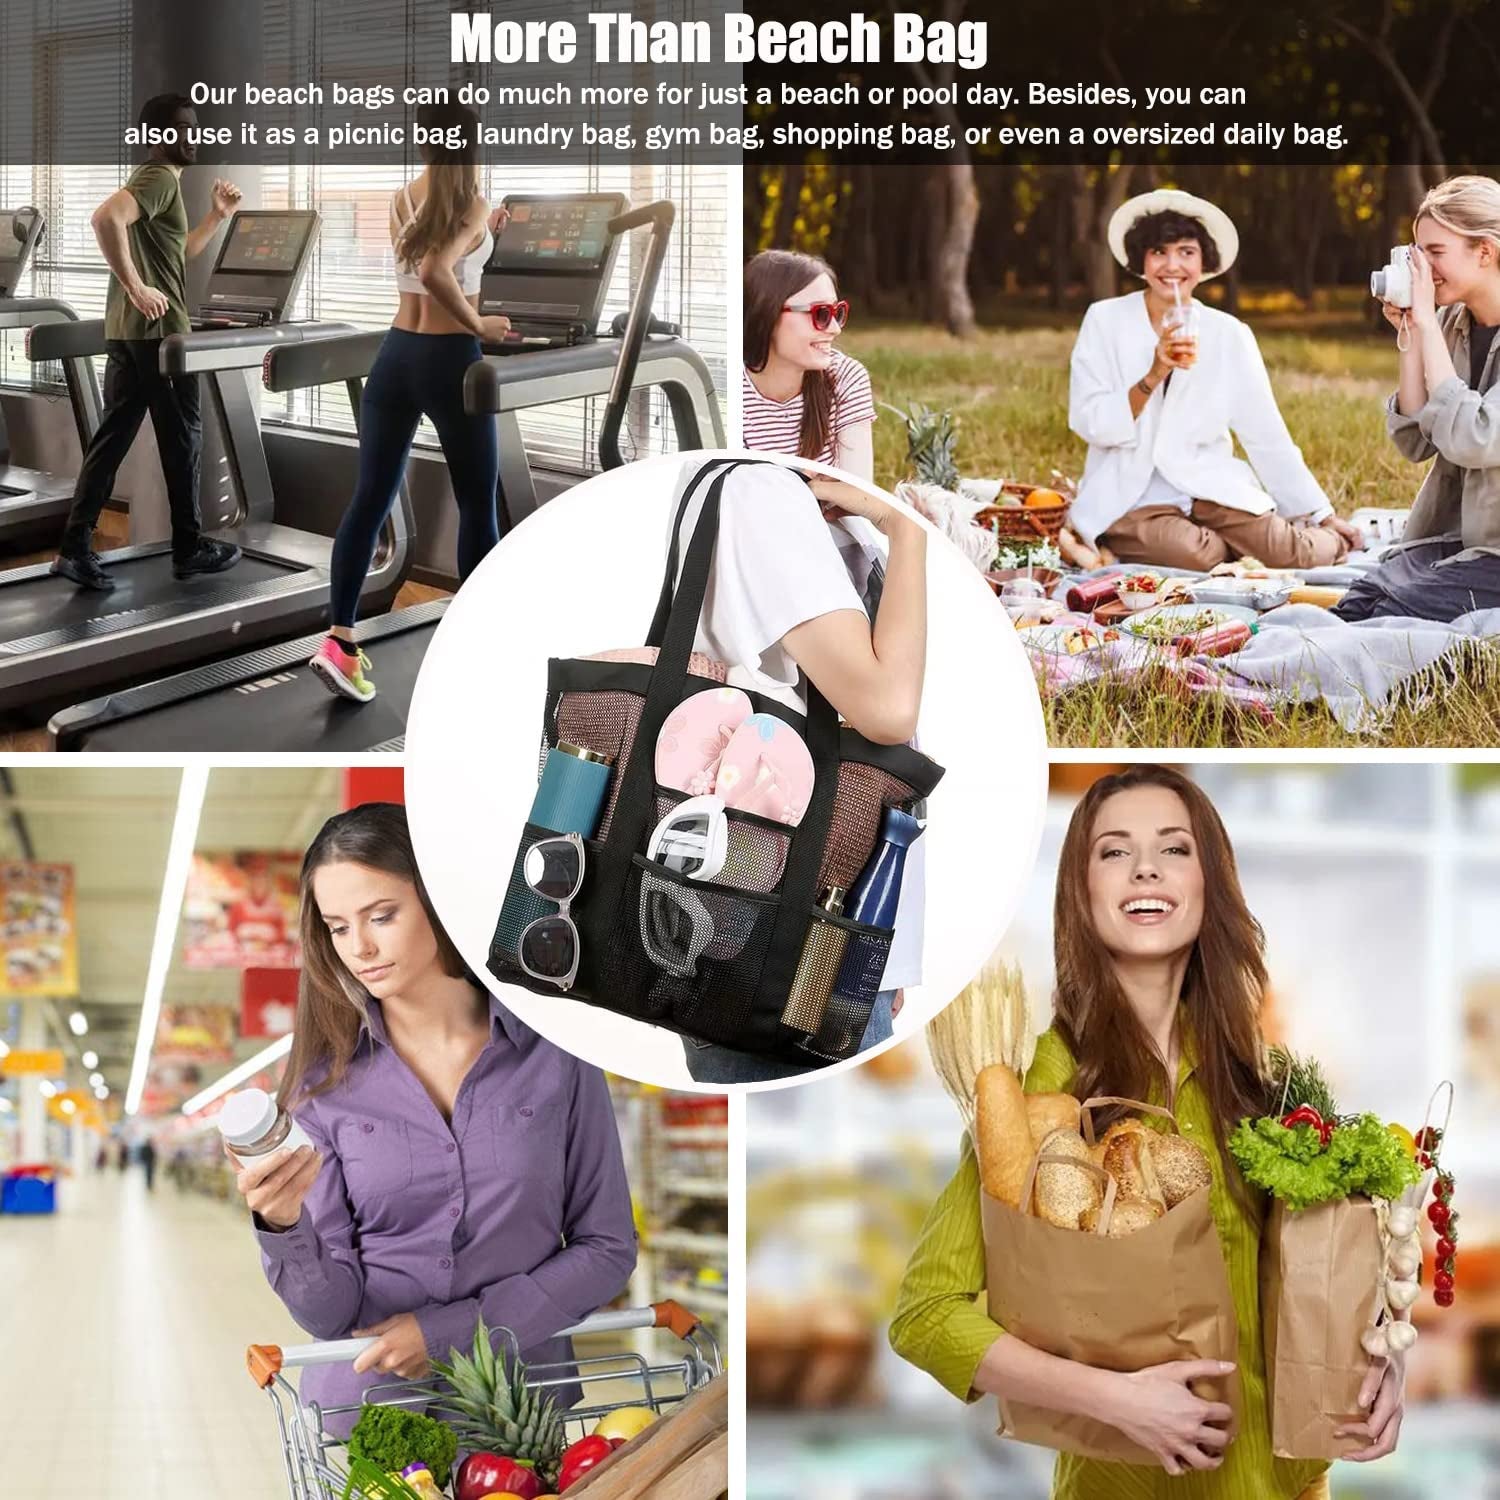  Mesh Beach Tote Bag for Women XL 